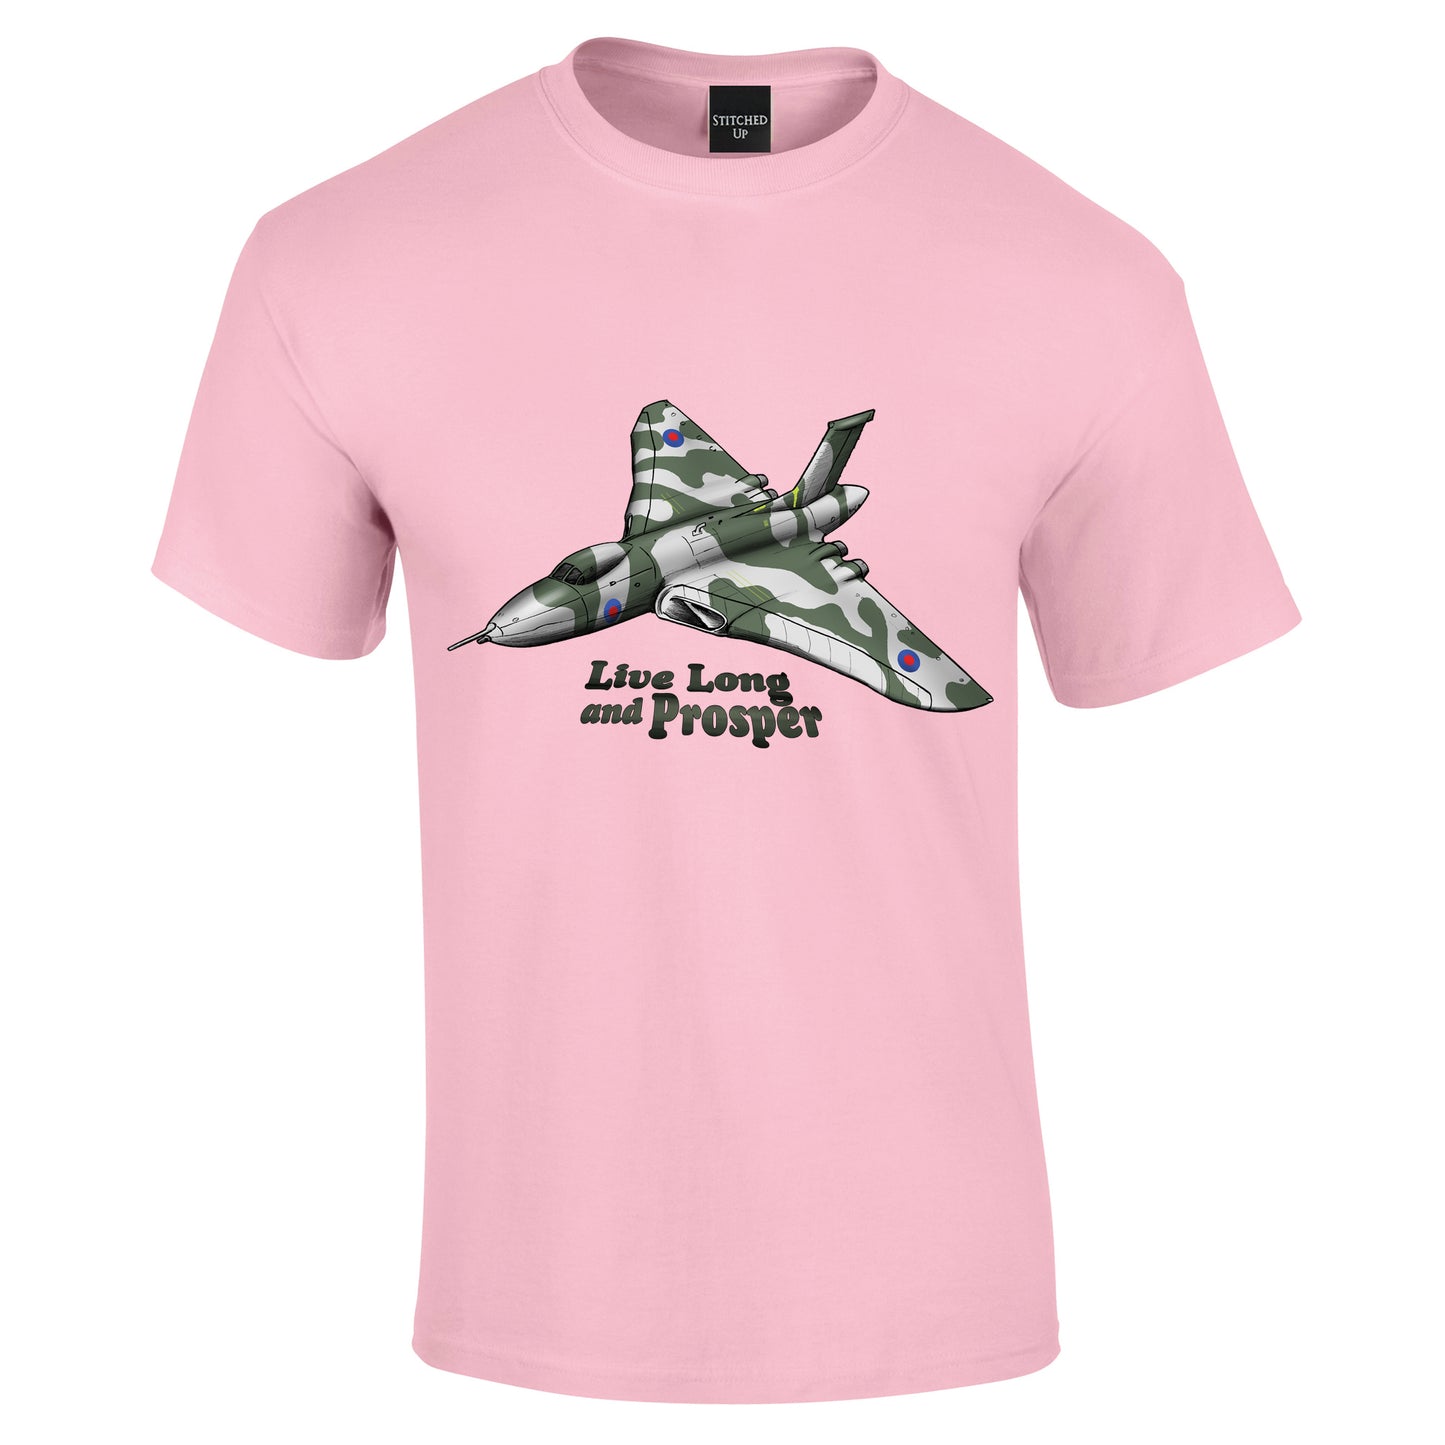 Vulcan Bomber Aircraft T-Shirt